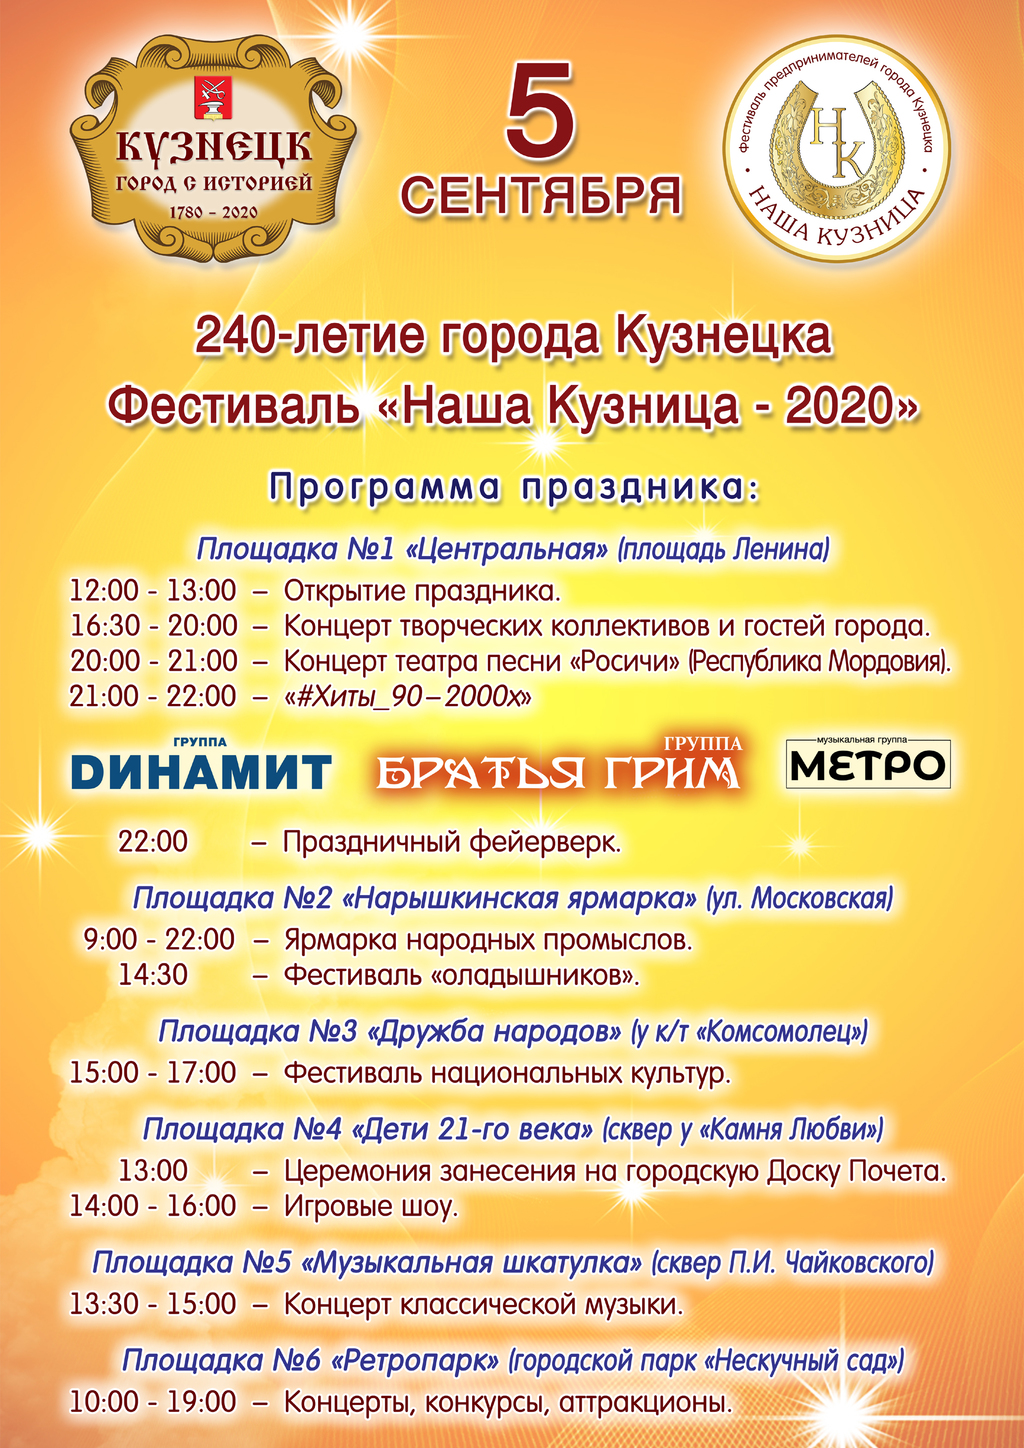 5 сентября Кузнецк отметит День города